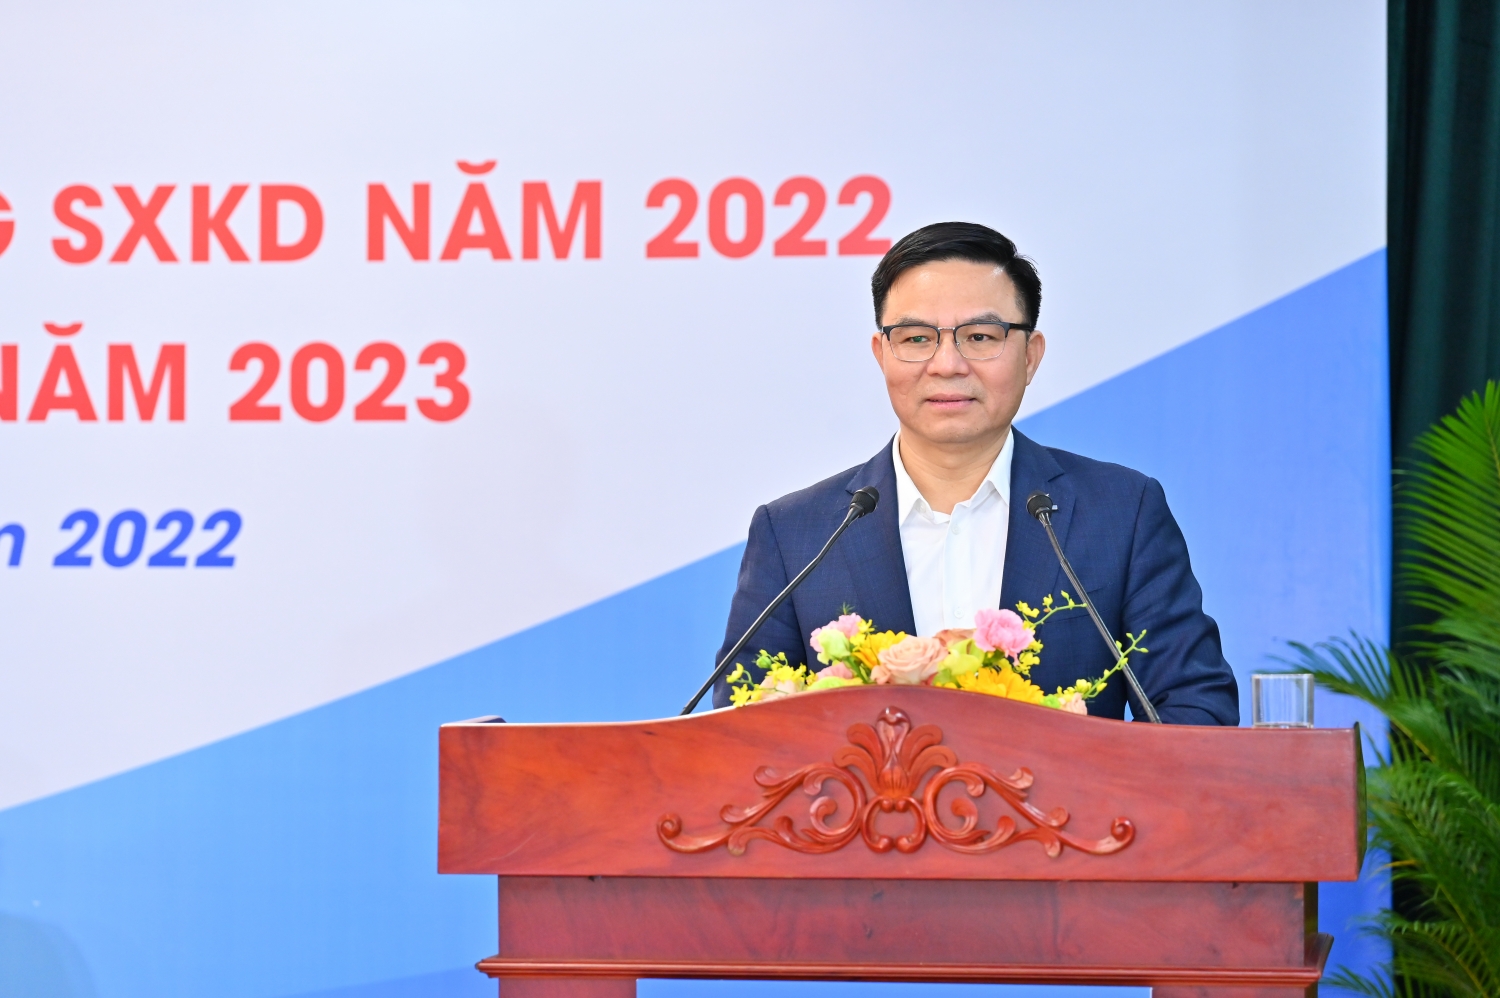 Ông Lê Mạnh Hùng – Phó Bí thư Đảng ủy, Tổng Giám đốc Tập đoàn Dầu khí Quốc gia Việt Nam chỉ đạo tại Hội nghị